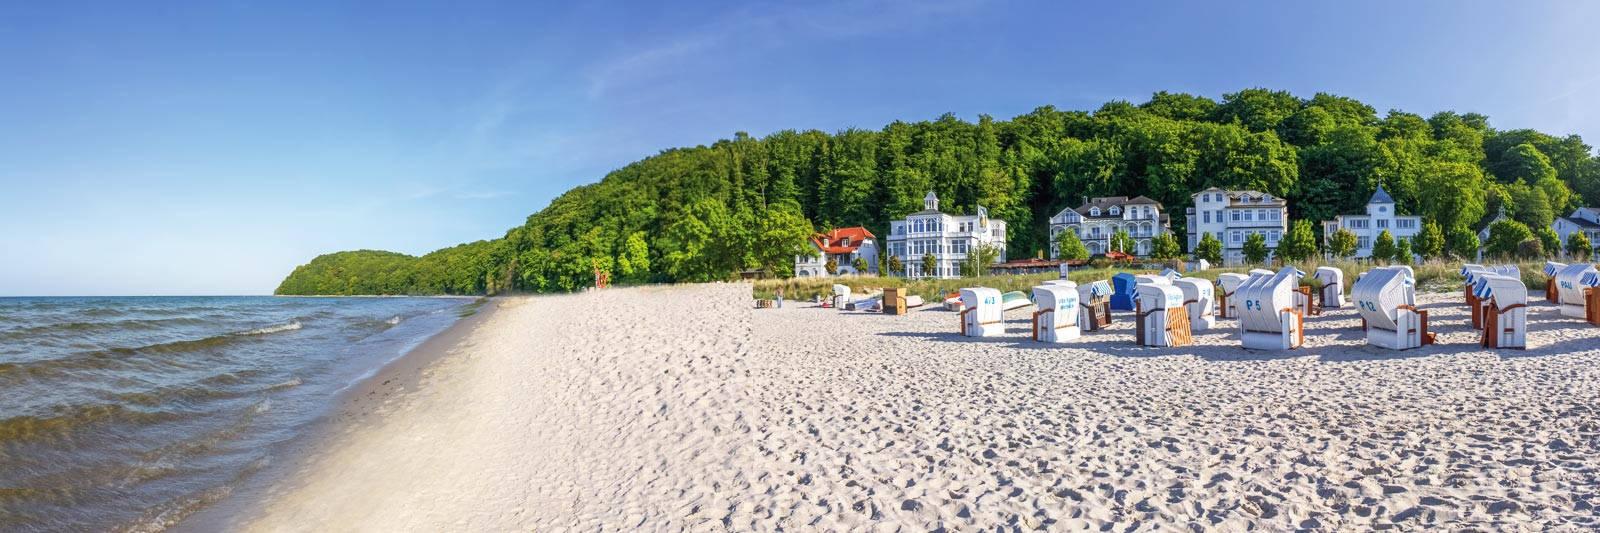 185 Ferienwohnungen und Ferienhäuser in Crivitz - tourist-online.de